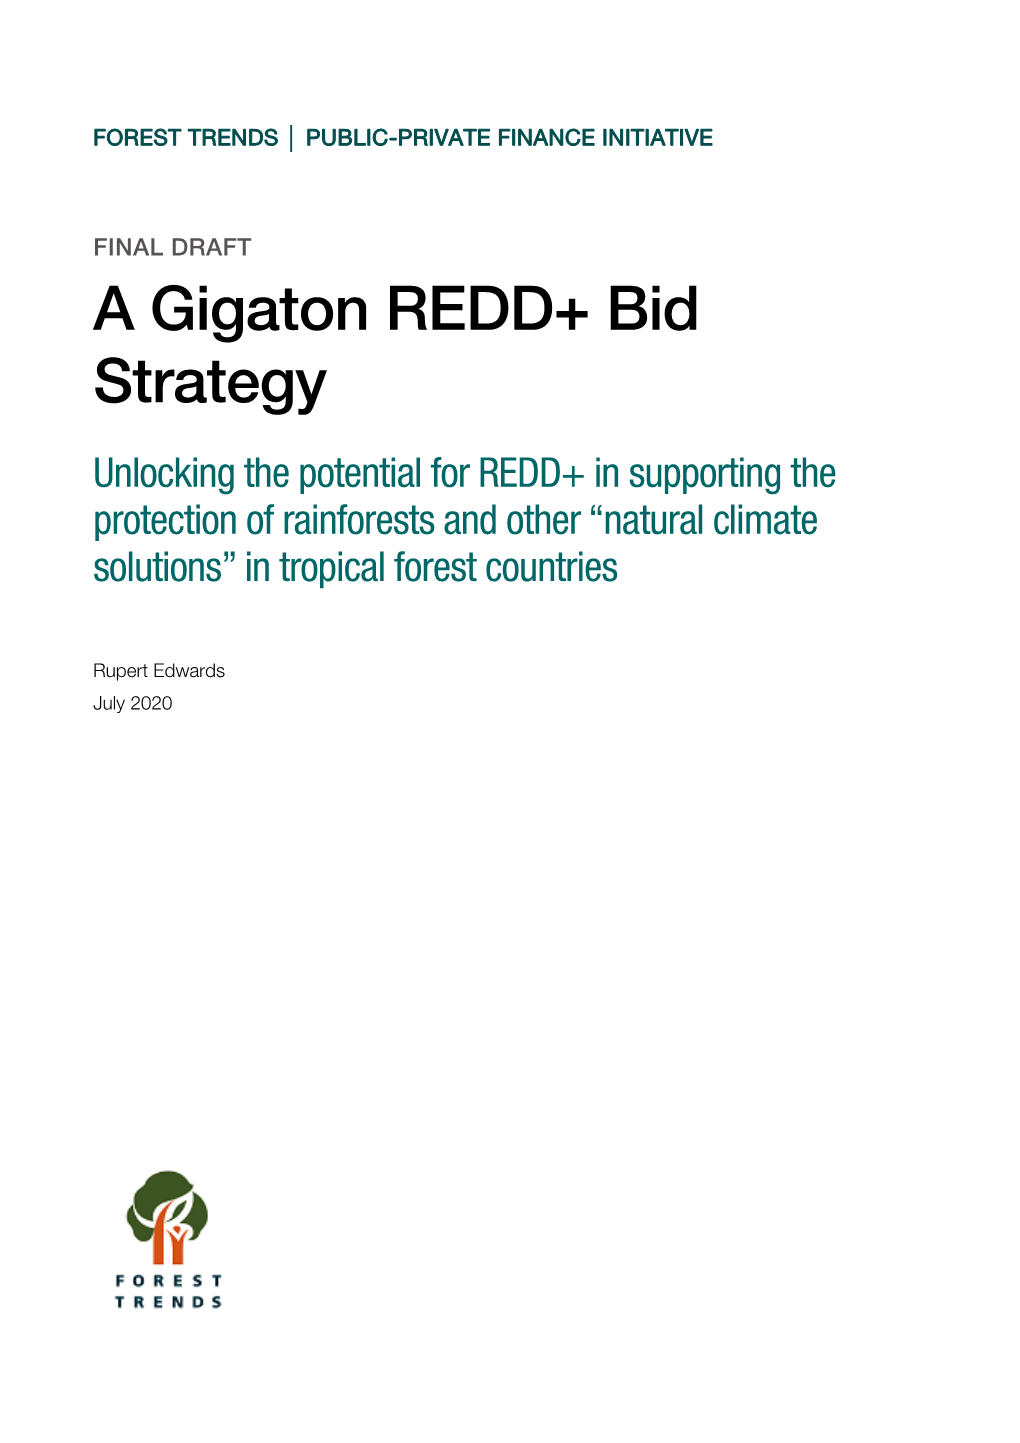 A Gigaton REDD+ Bid Strategy